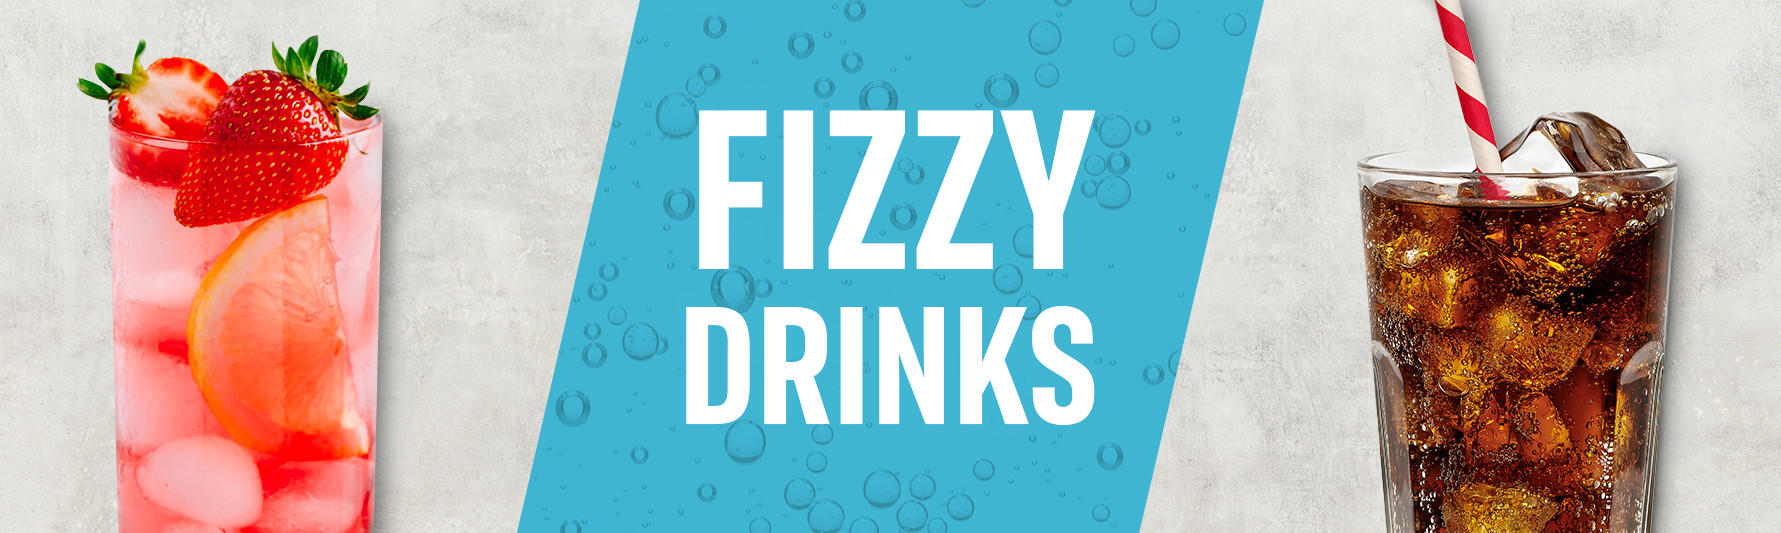 fizzy drinks